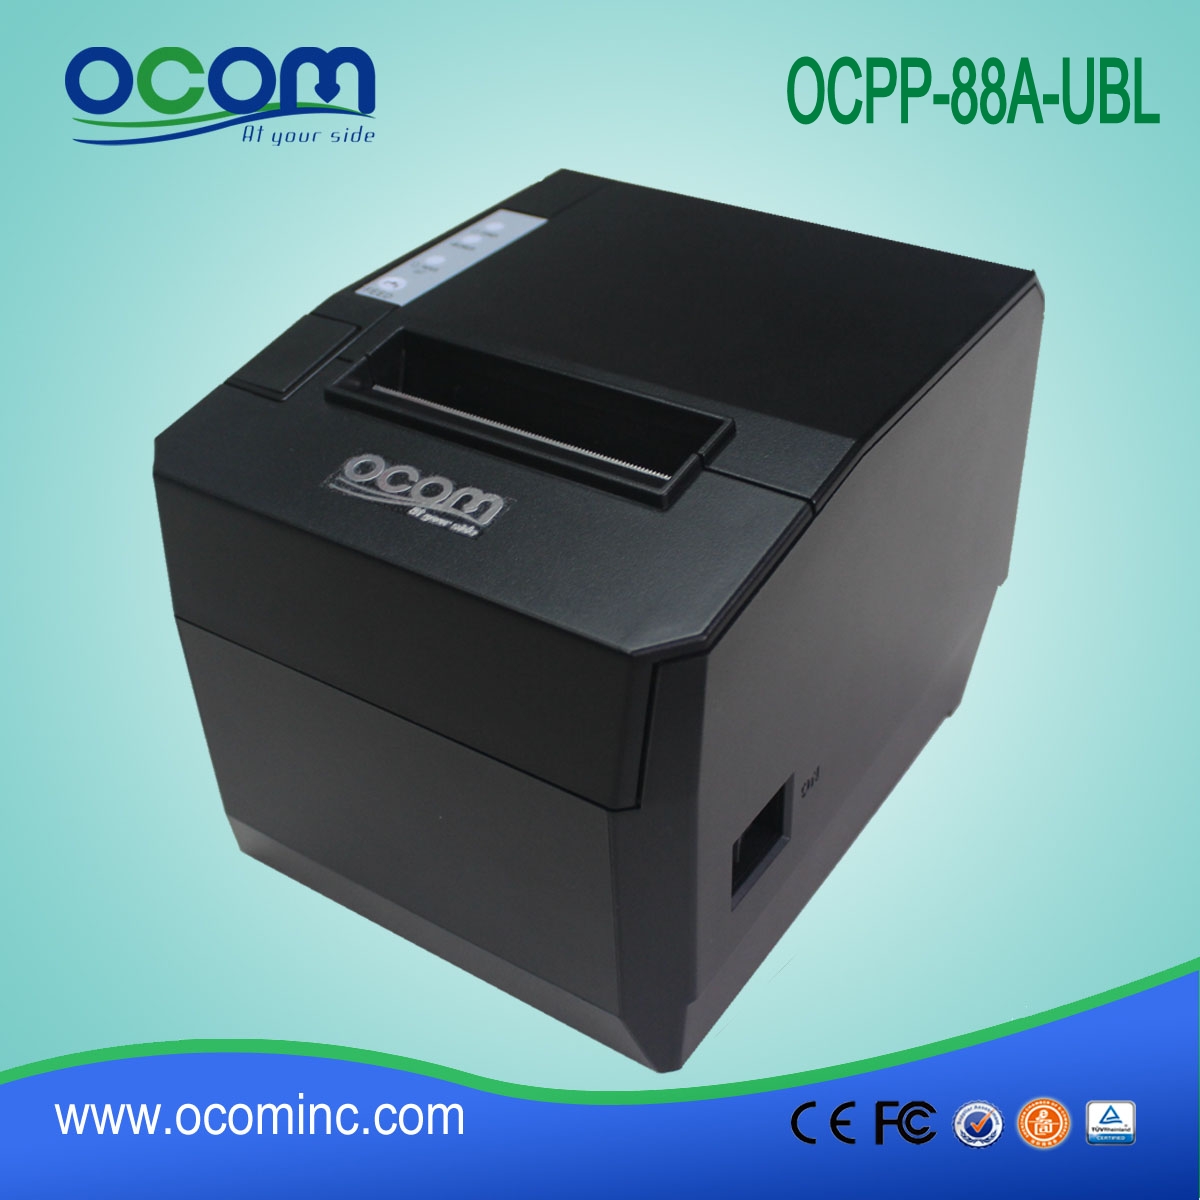 OCPP-88A Instalando Facilmente Impressora Térmica de Recepção de 80mm com Auto Cut